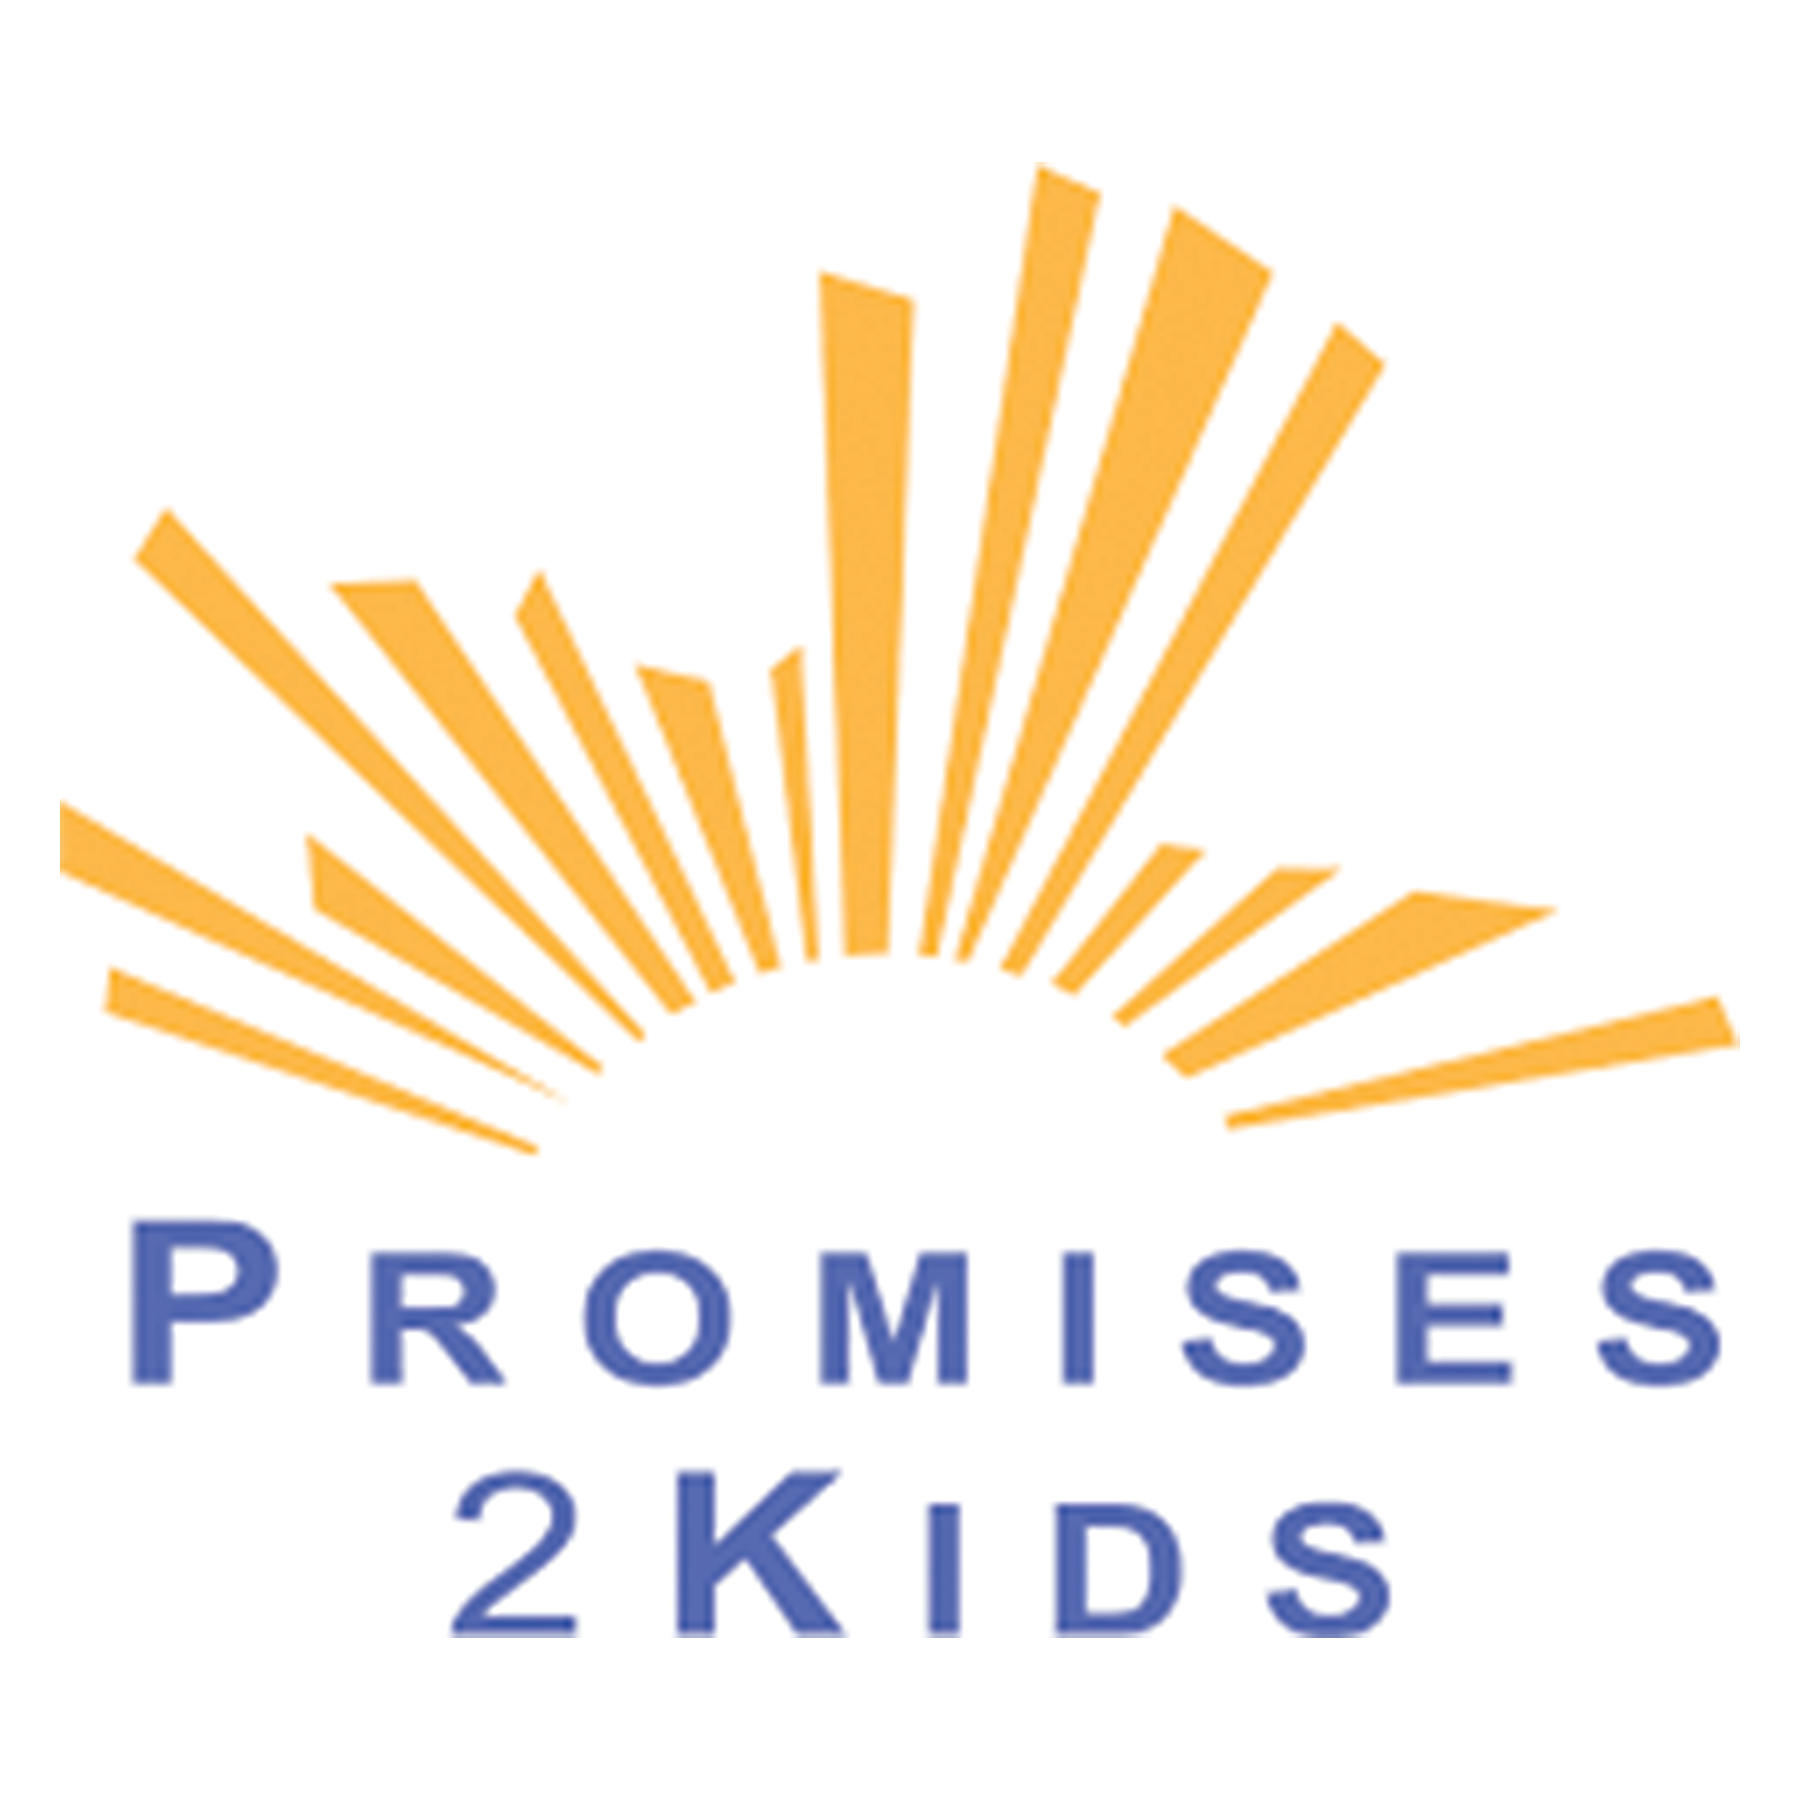 Promises 2 Kids